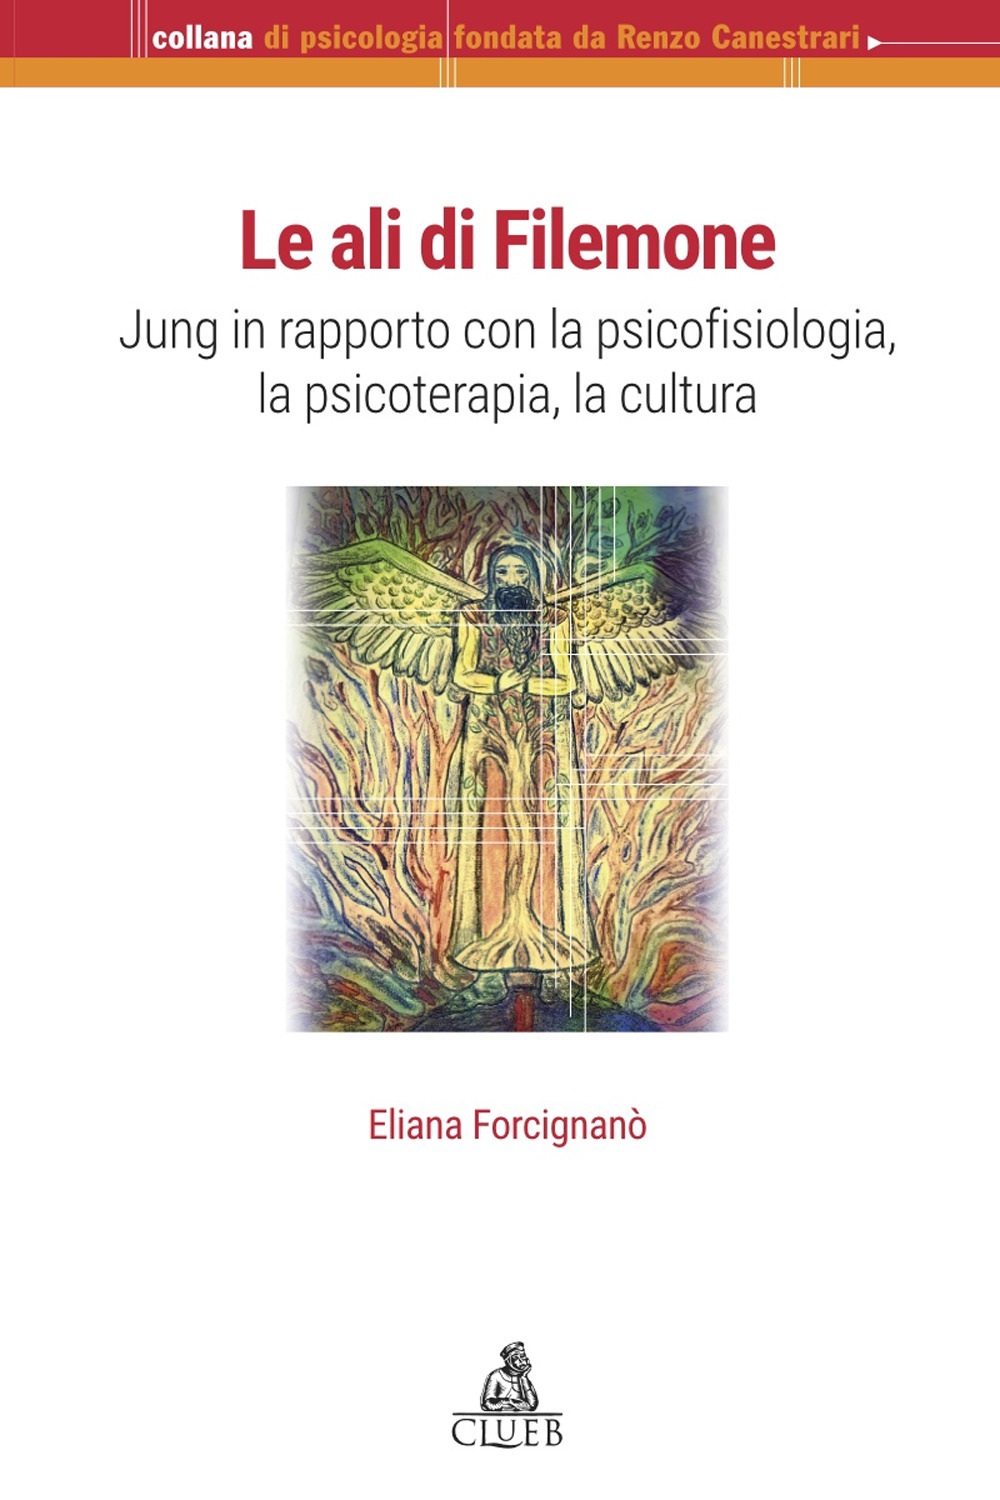 Le ali di Filemone. Jung in rapporto con la psicofisiologia, la psicoterapia, la cultura